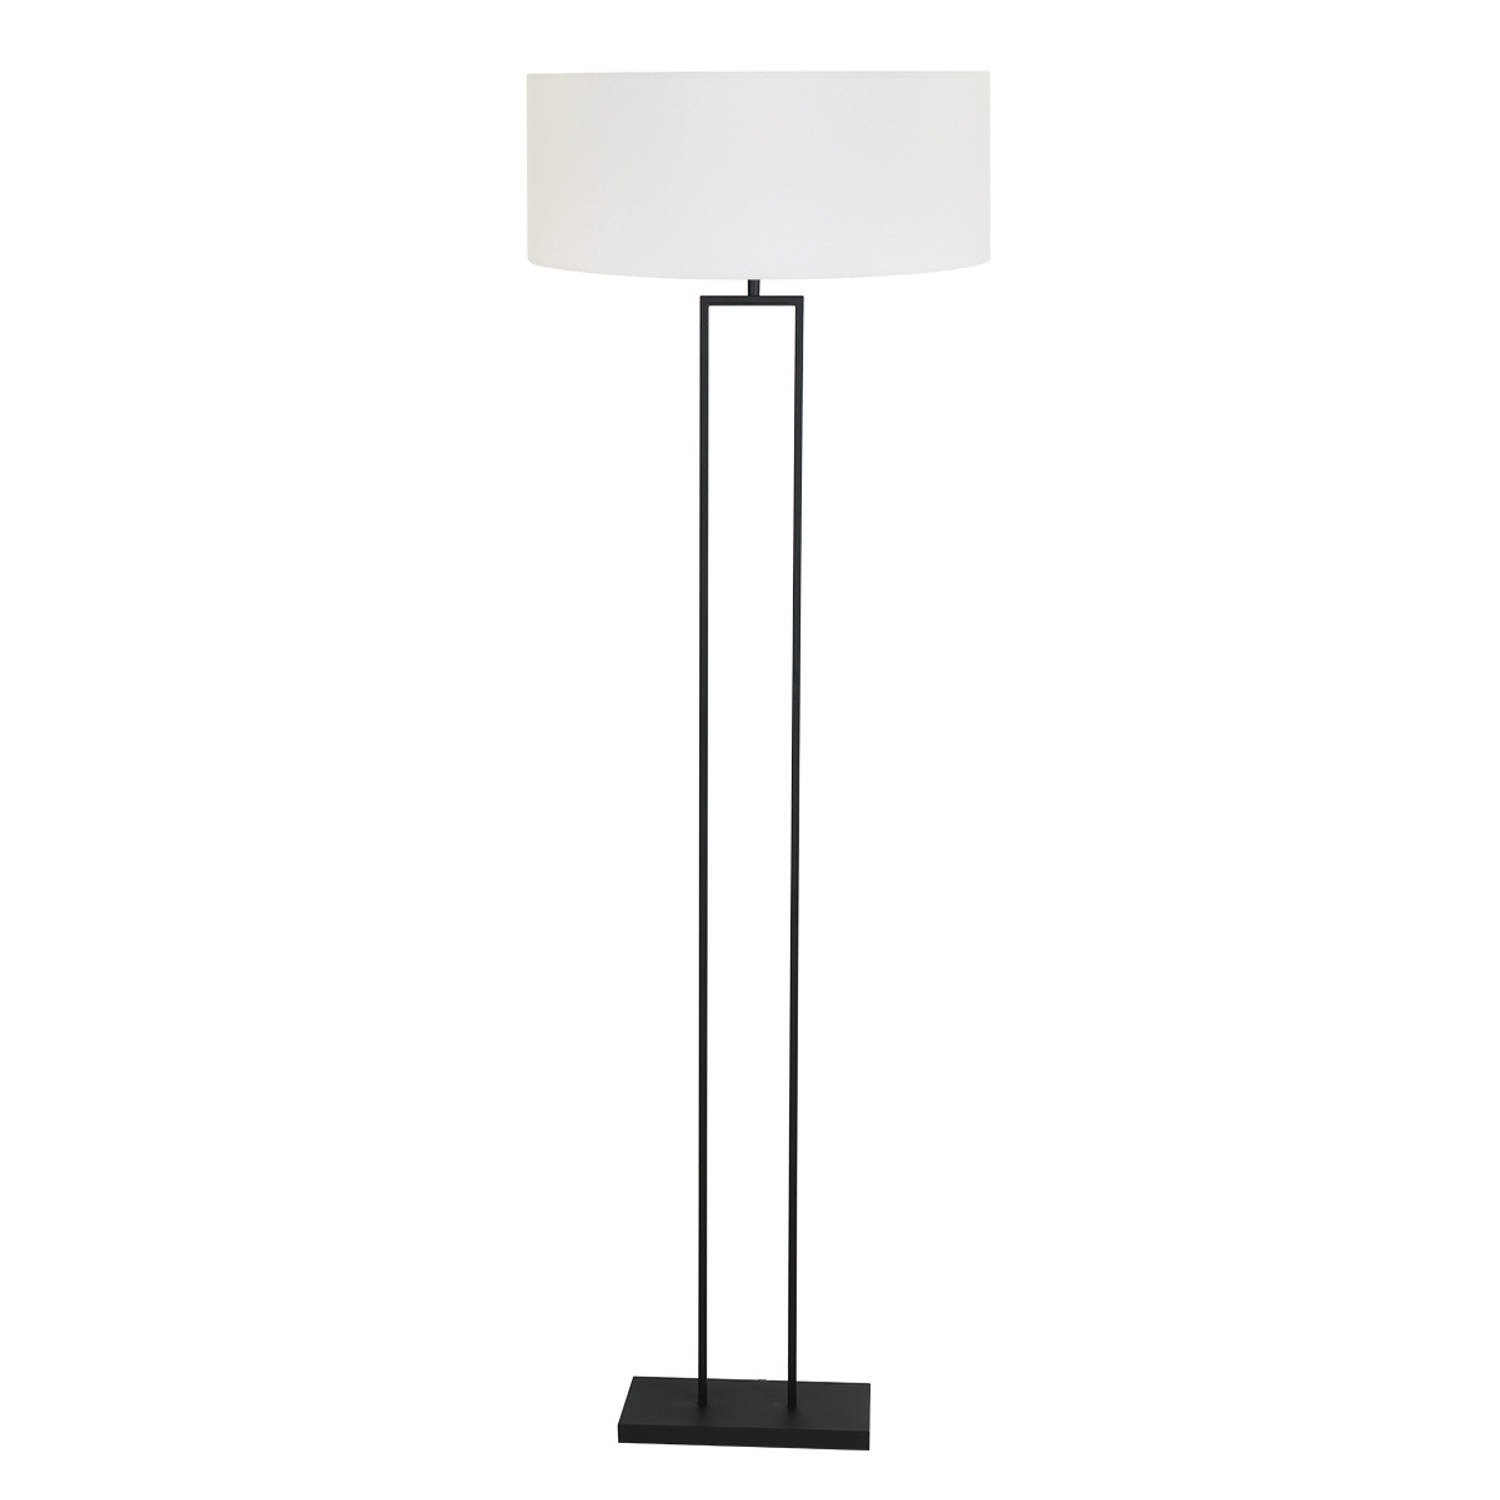 Vloerlamp Stang | 1-lichts | linnen wit met zwart | E27 fitting | modern design | voor woonkamer / slaapkamer | staande lamp | industrieel